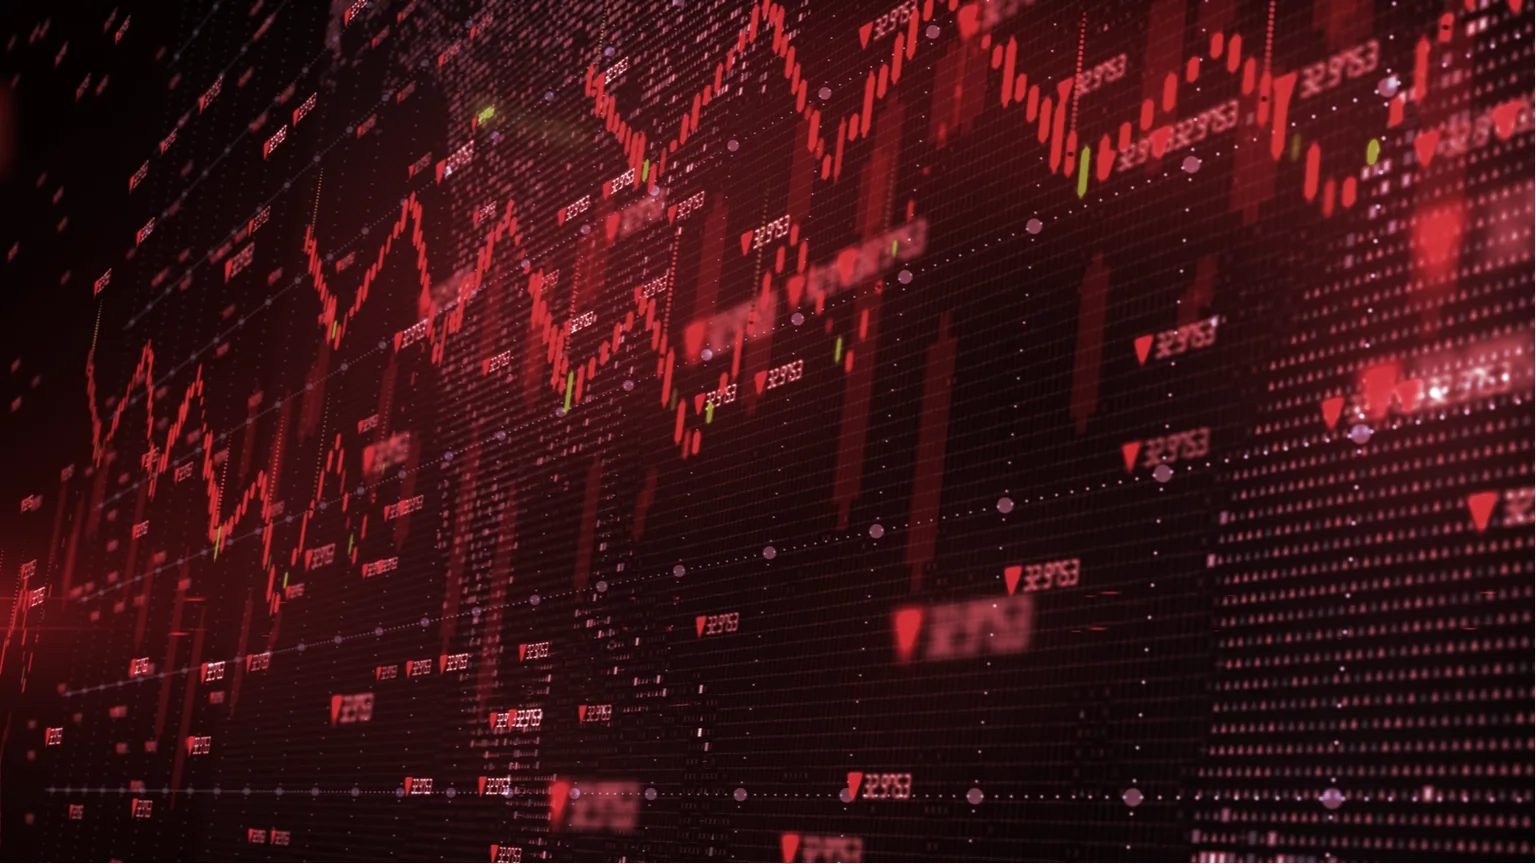 Los mercados de criptomonedas están en la zona roja. Imagen: Shutterstock